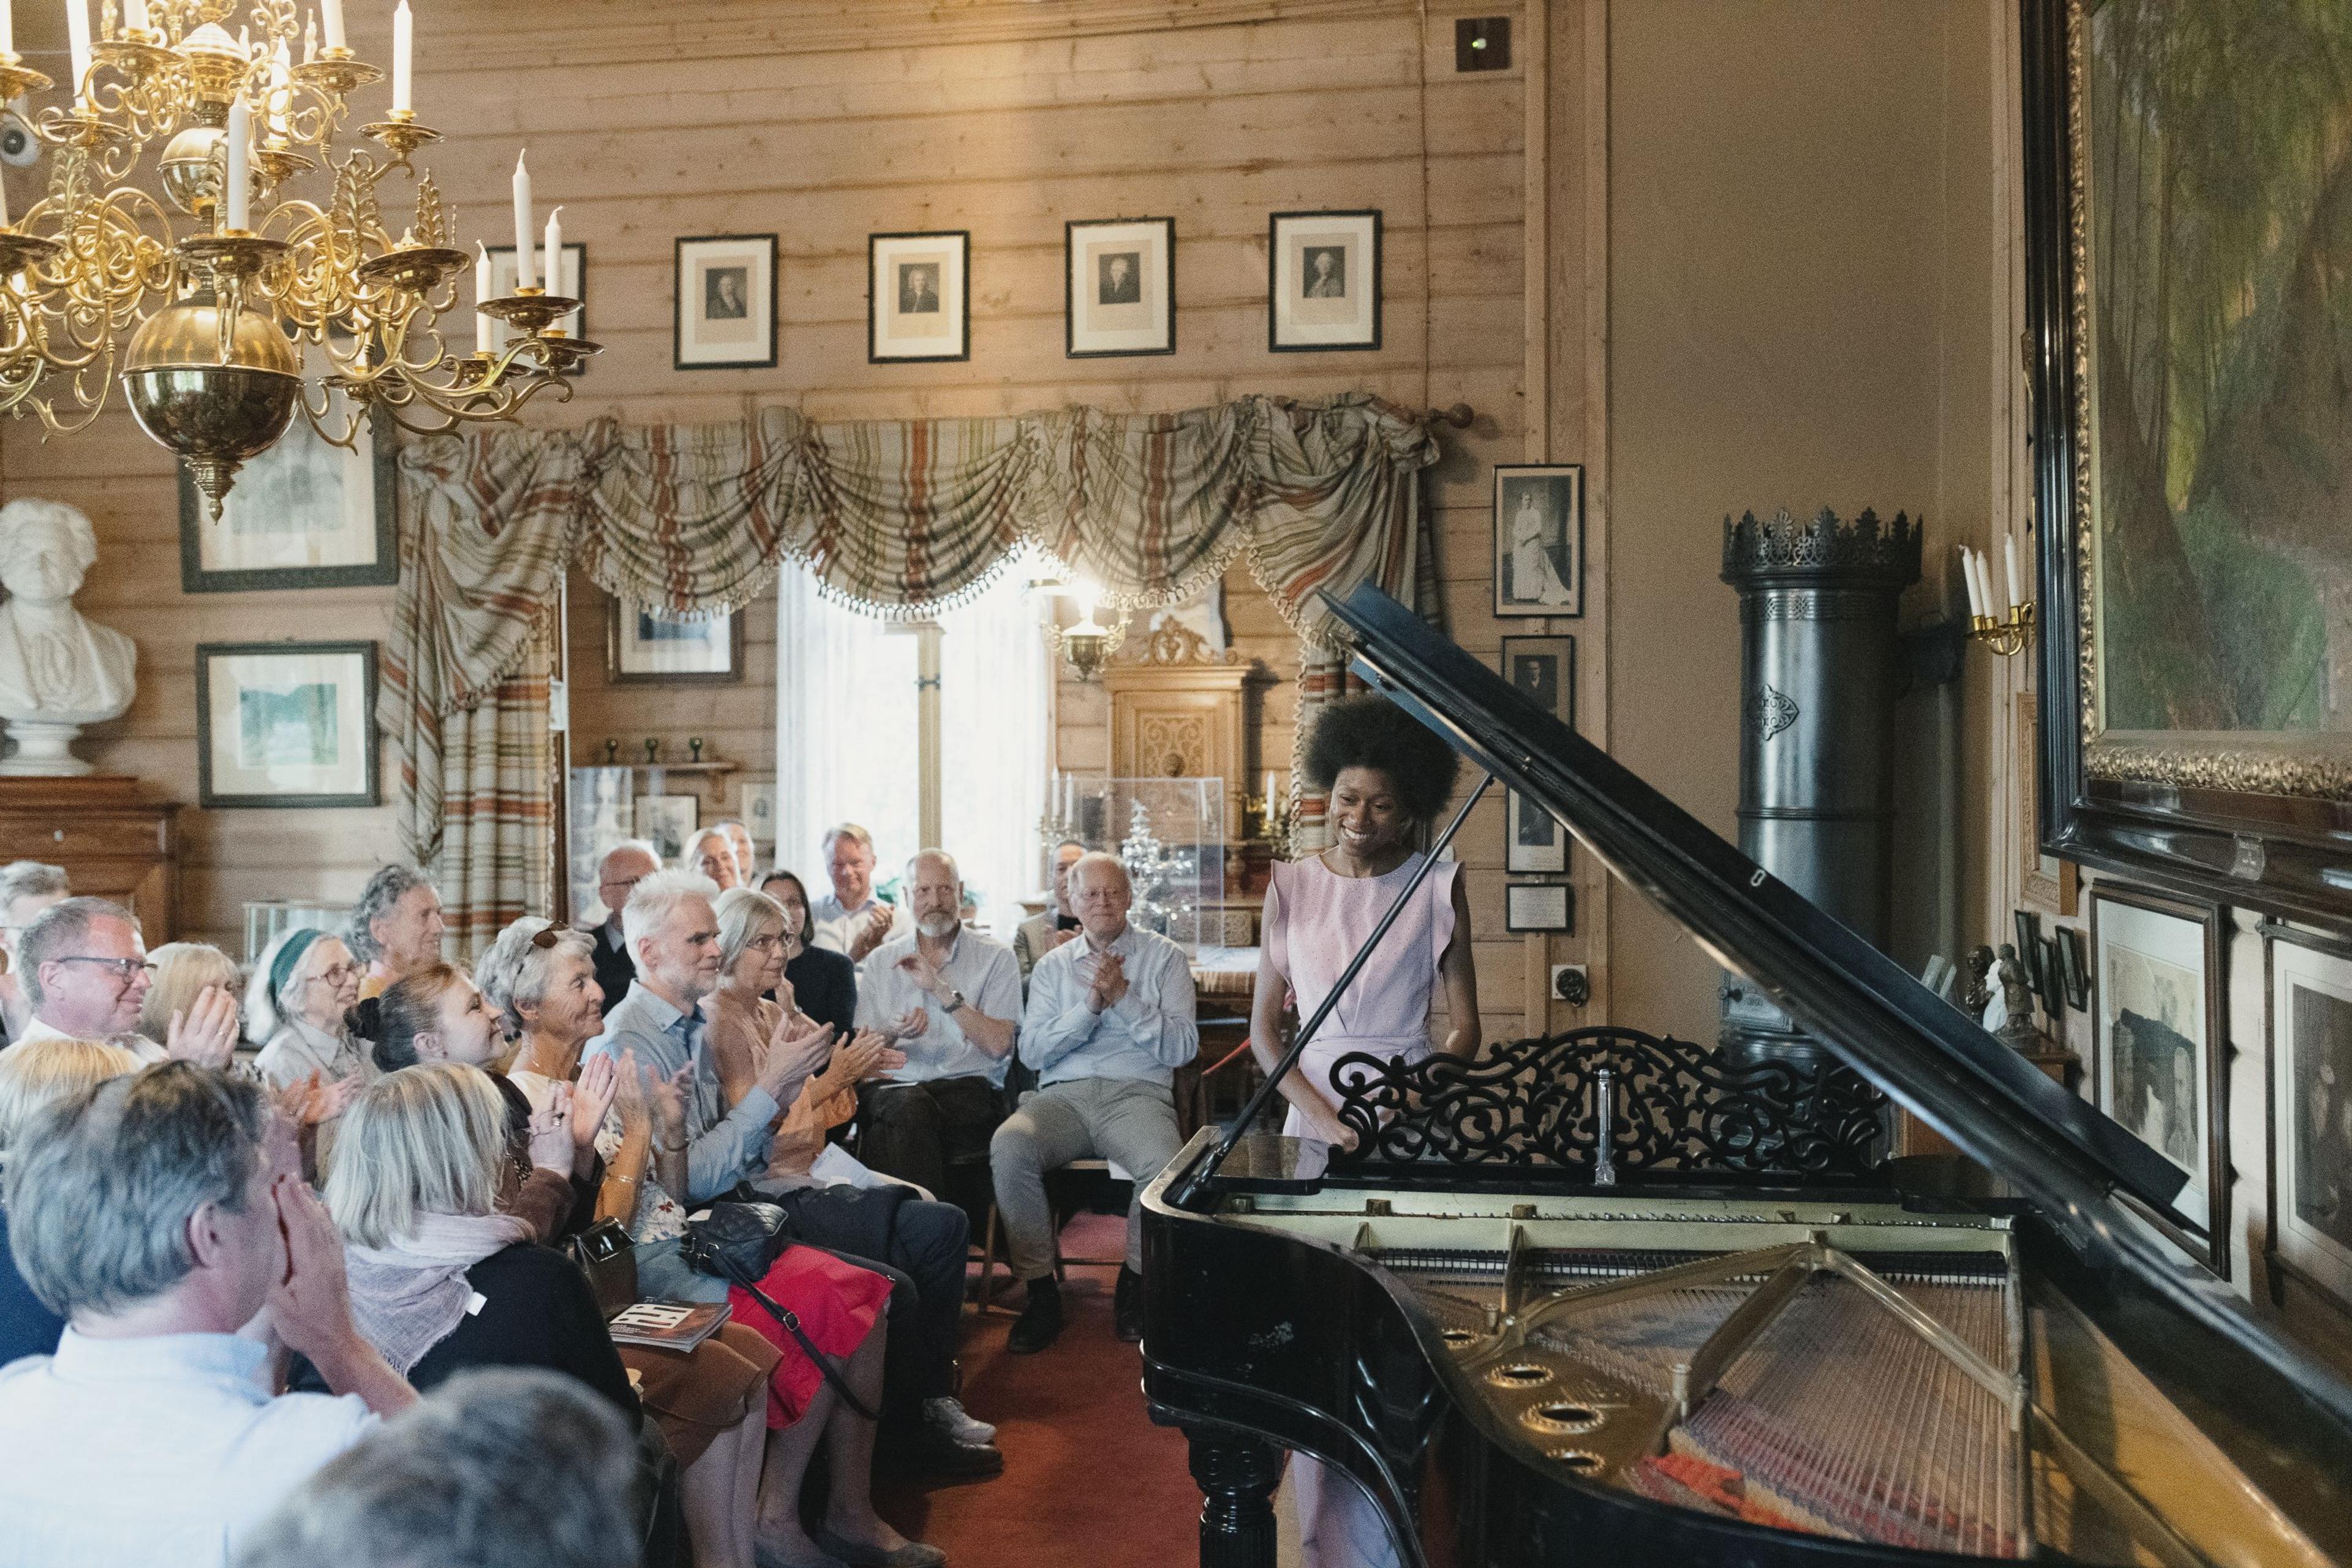 En gruppe publikummere i Griegs villa gir applaus til en pianist. Hun smiler og står ved flygelet.